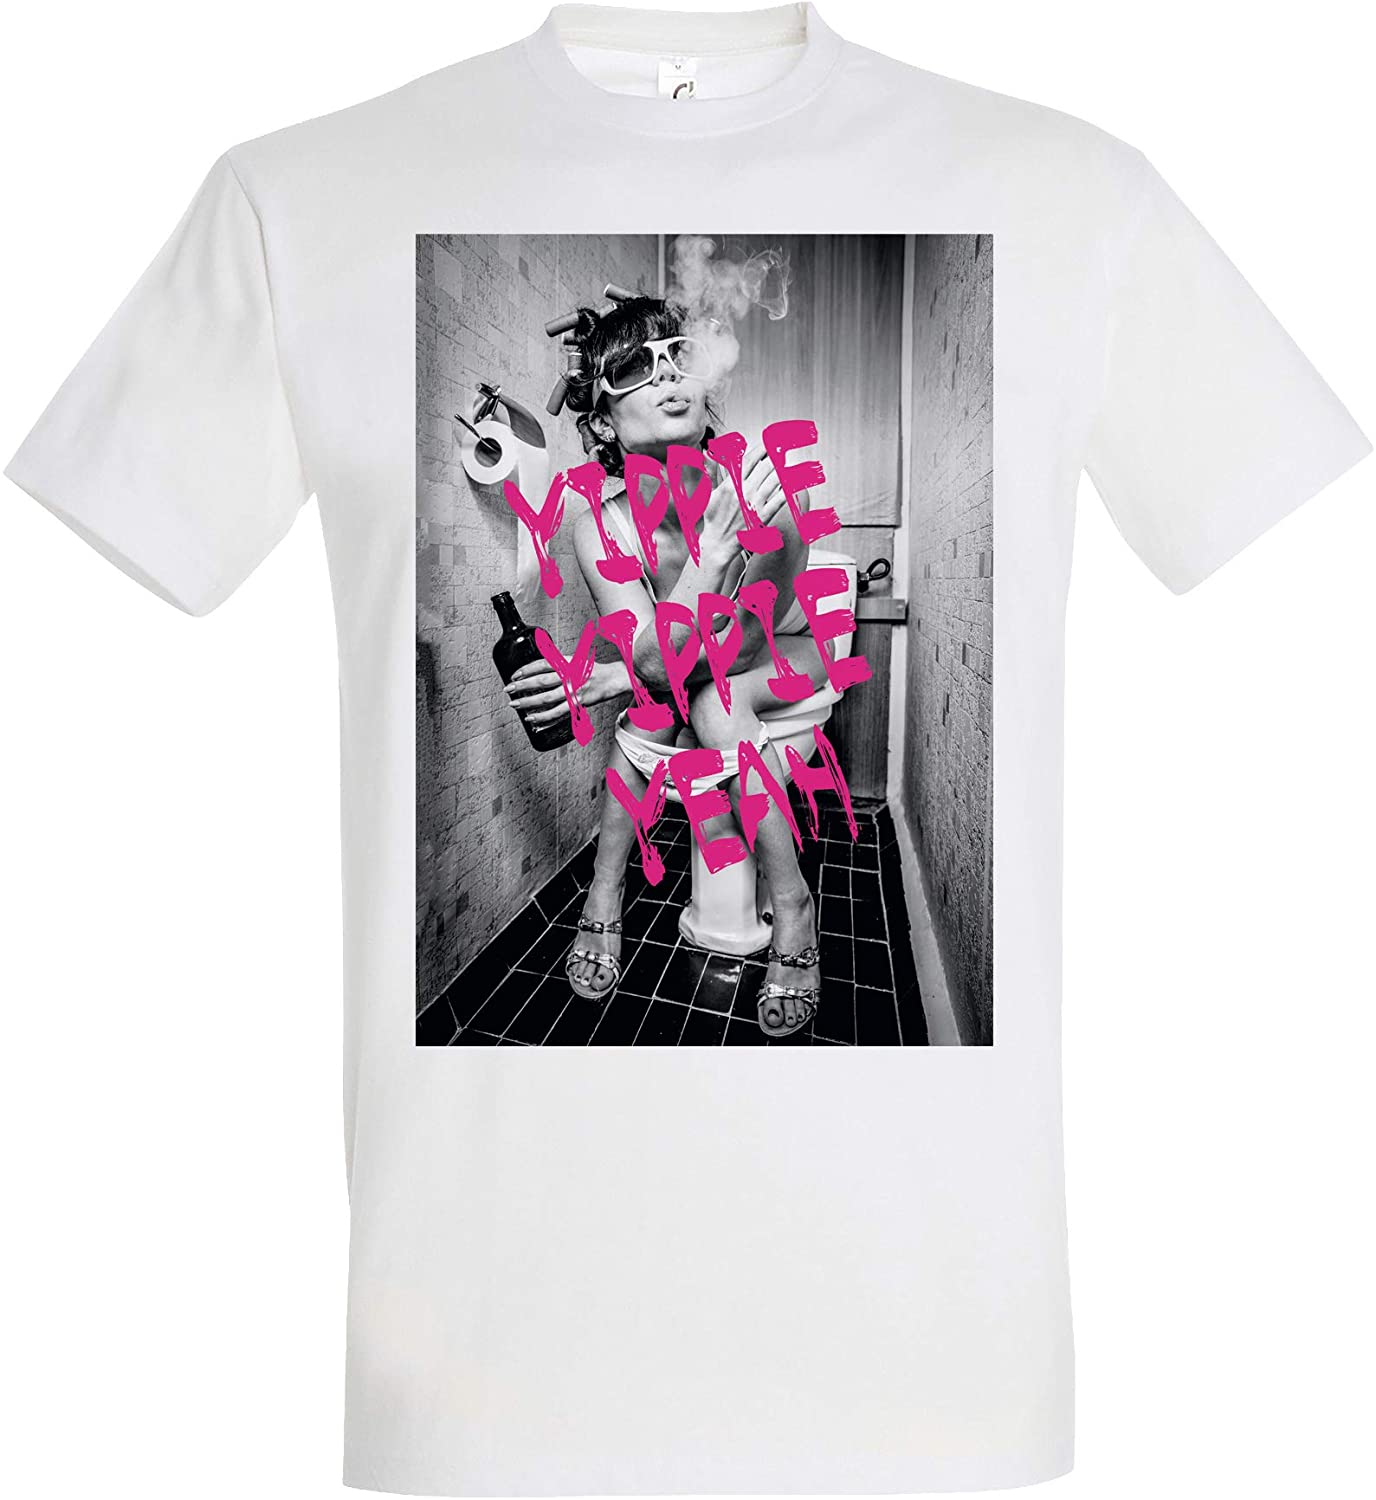 Weisses T-Shirt Toiletparty mit Schriftzug Yippie Yippie Yeah, Party T-Shirt, Feiern, Rauchen, Trinken